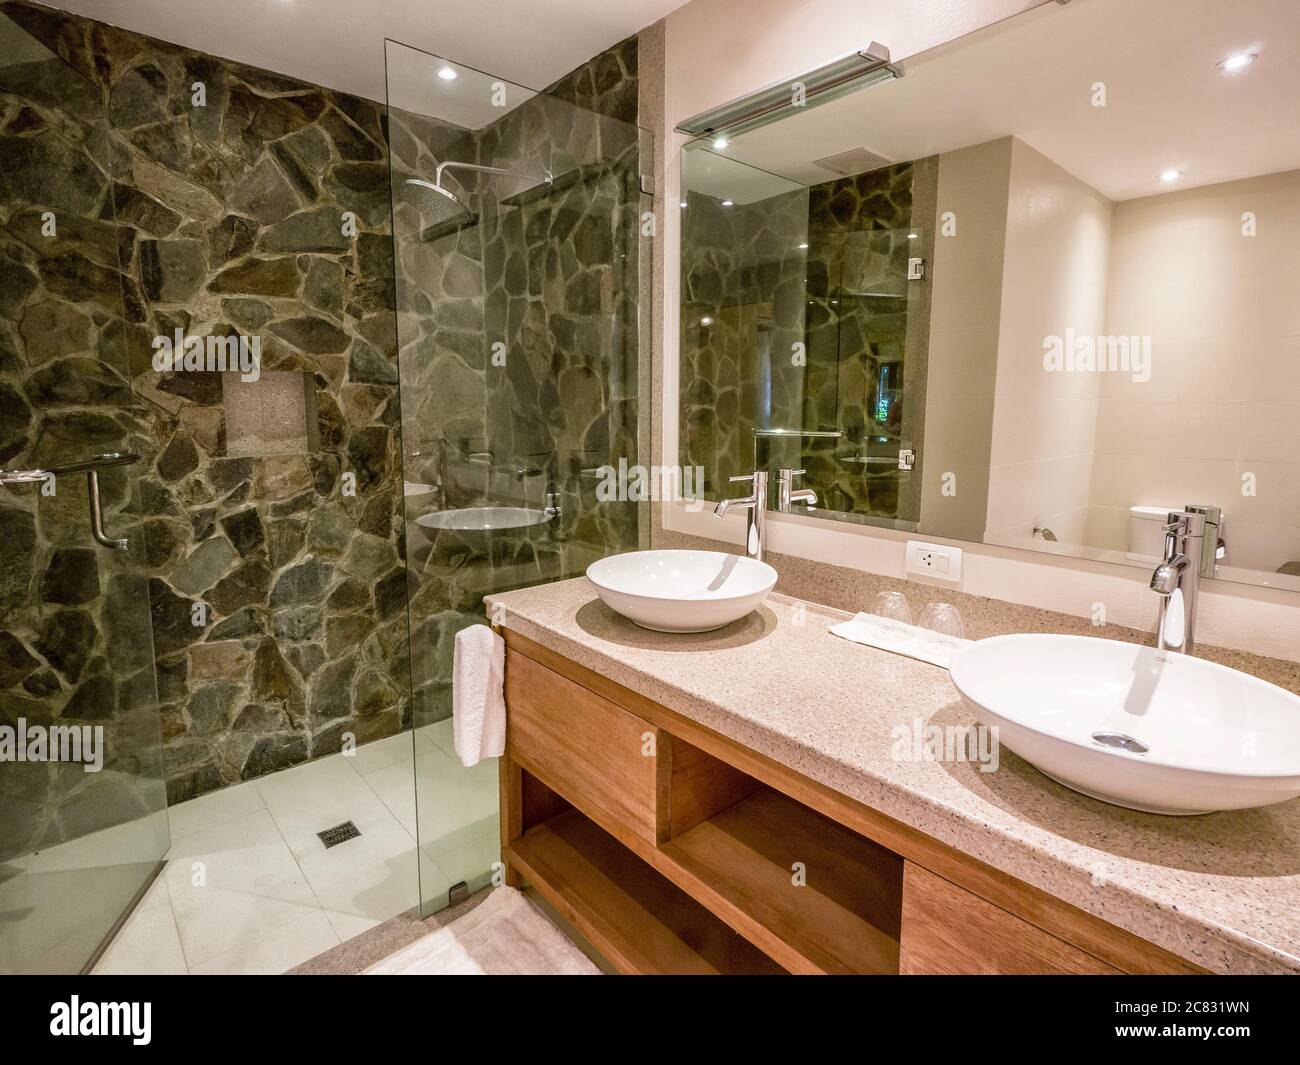 Modernes Badezimmer mit zwei runden weißen Keramikwaschbecken auf Granitablagen, Duschabtrennung mit Natursteinwänden. Neutrale Farbe. Stockfoto